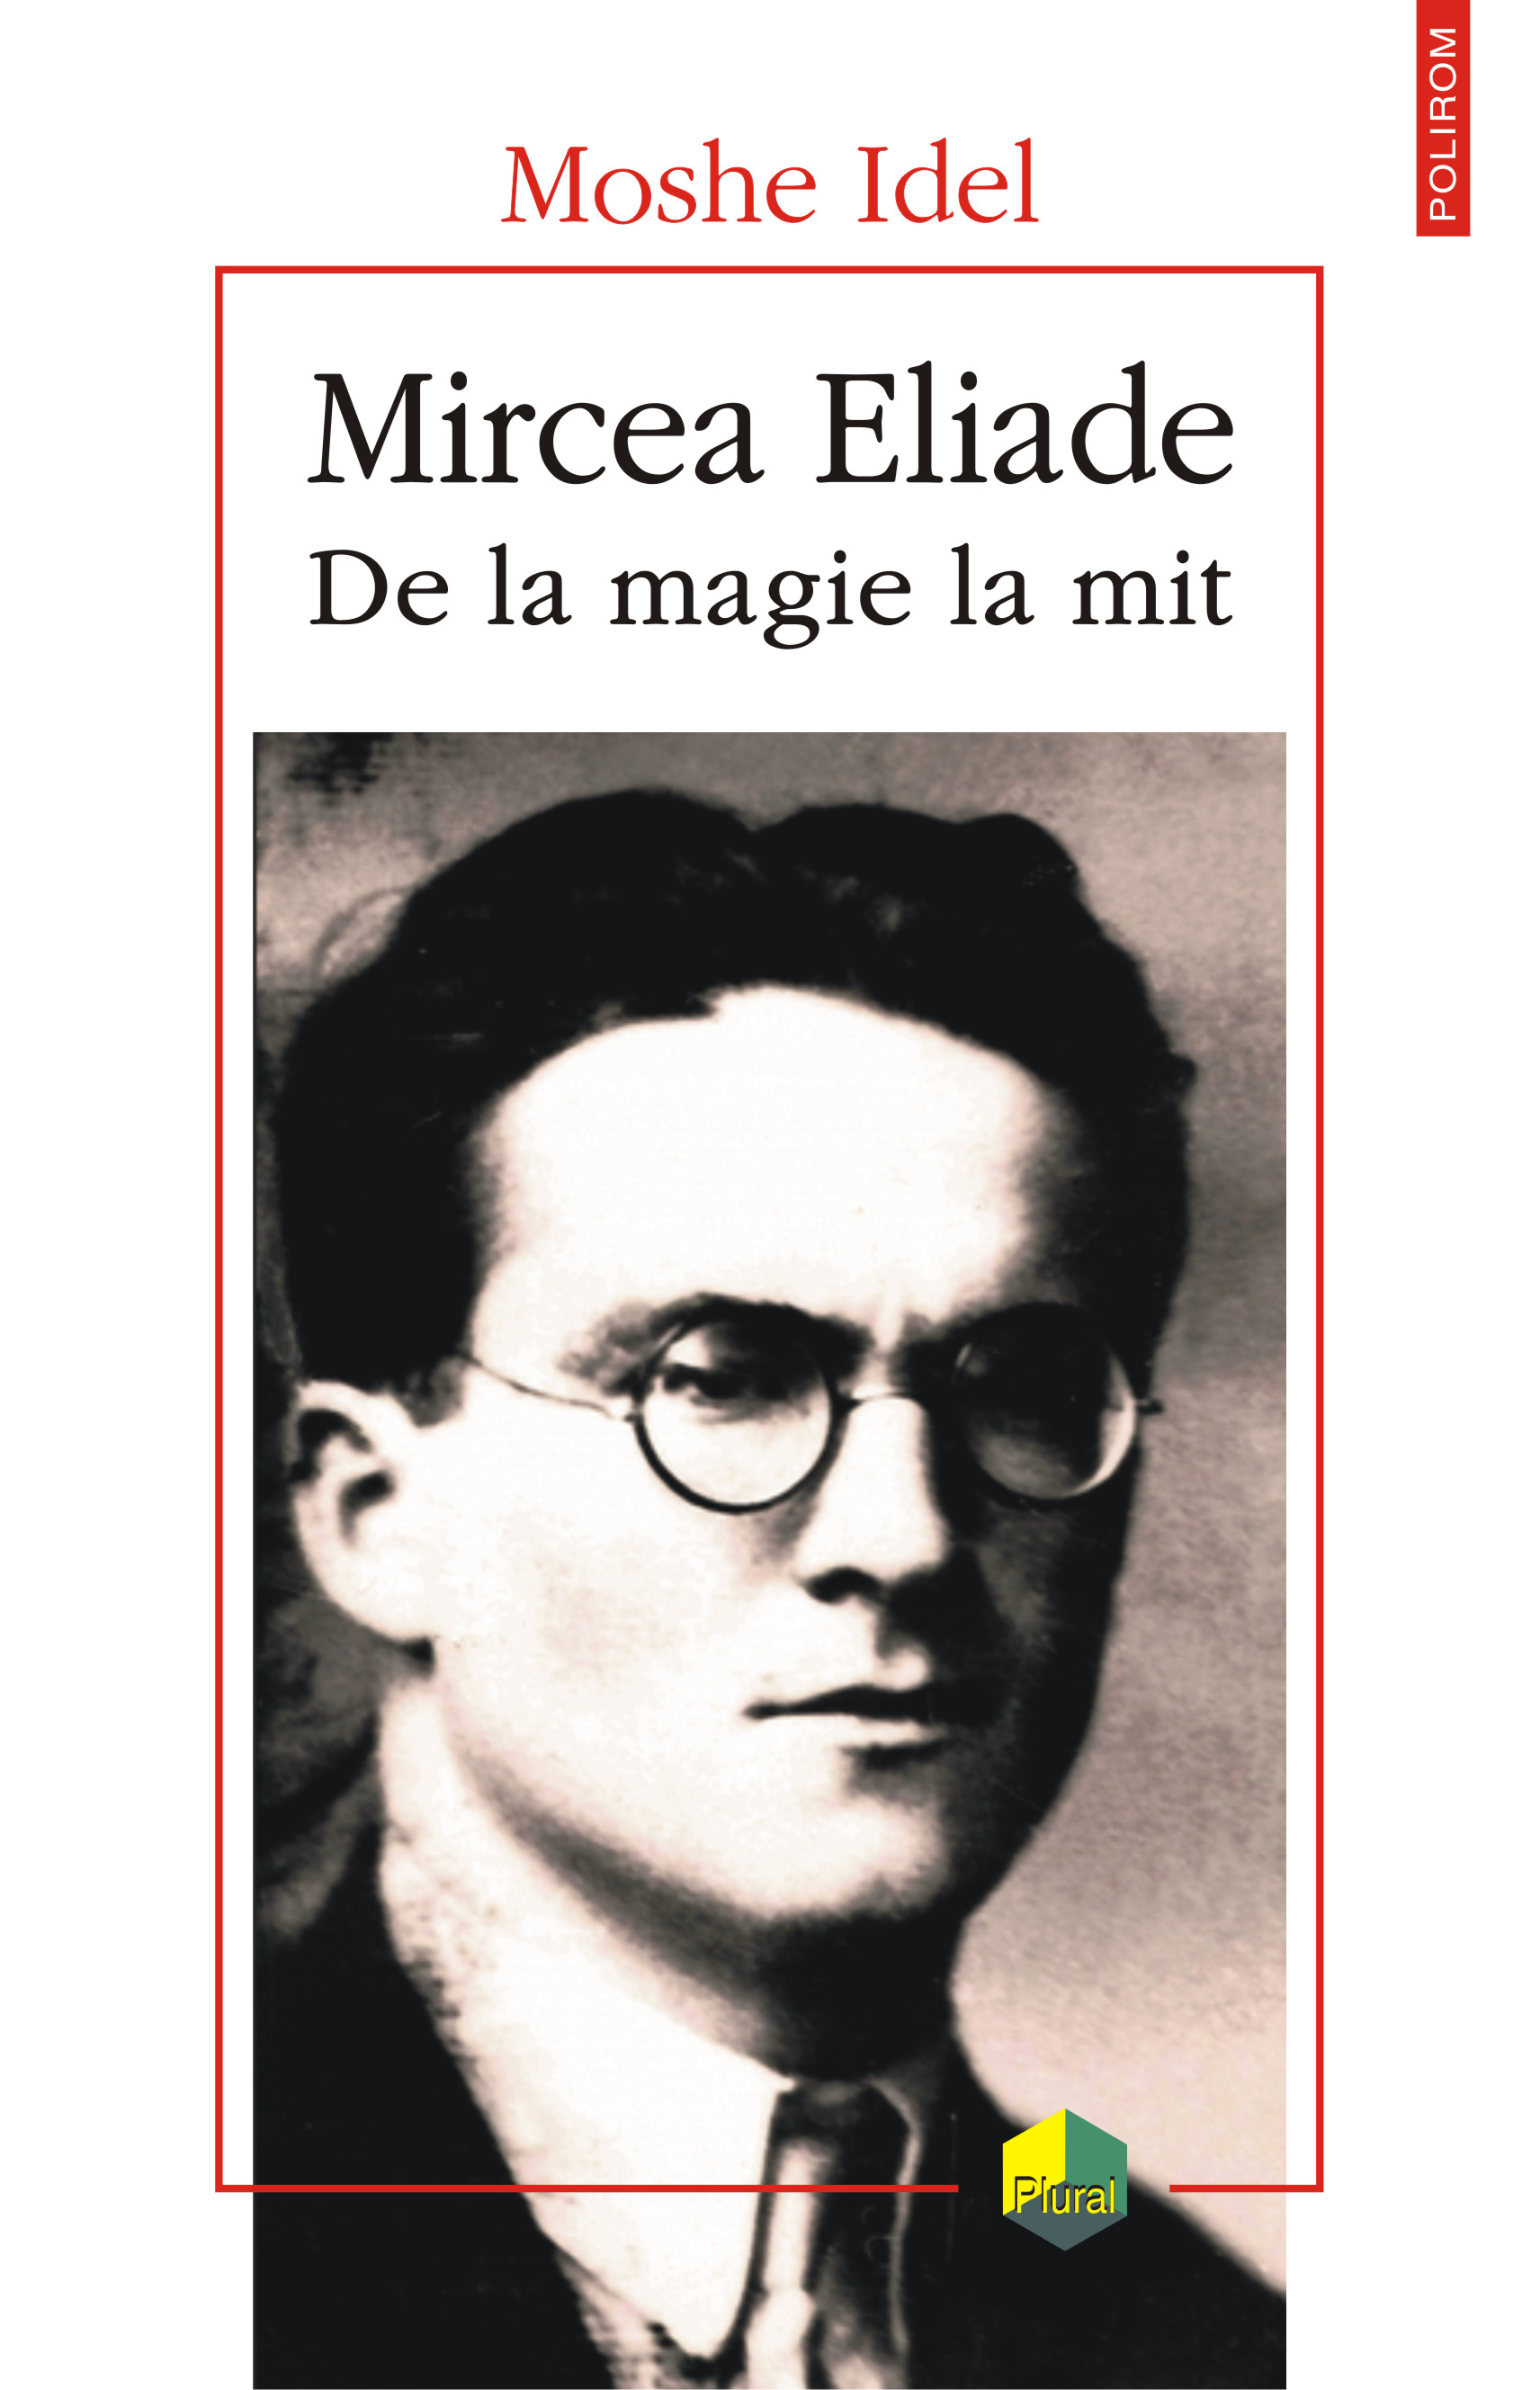 eBook Mircea Eliade. De la magie la mit - Moshe Idel